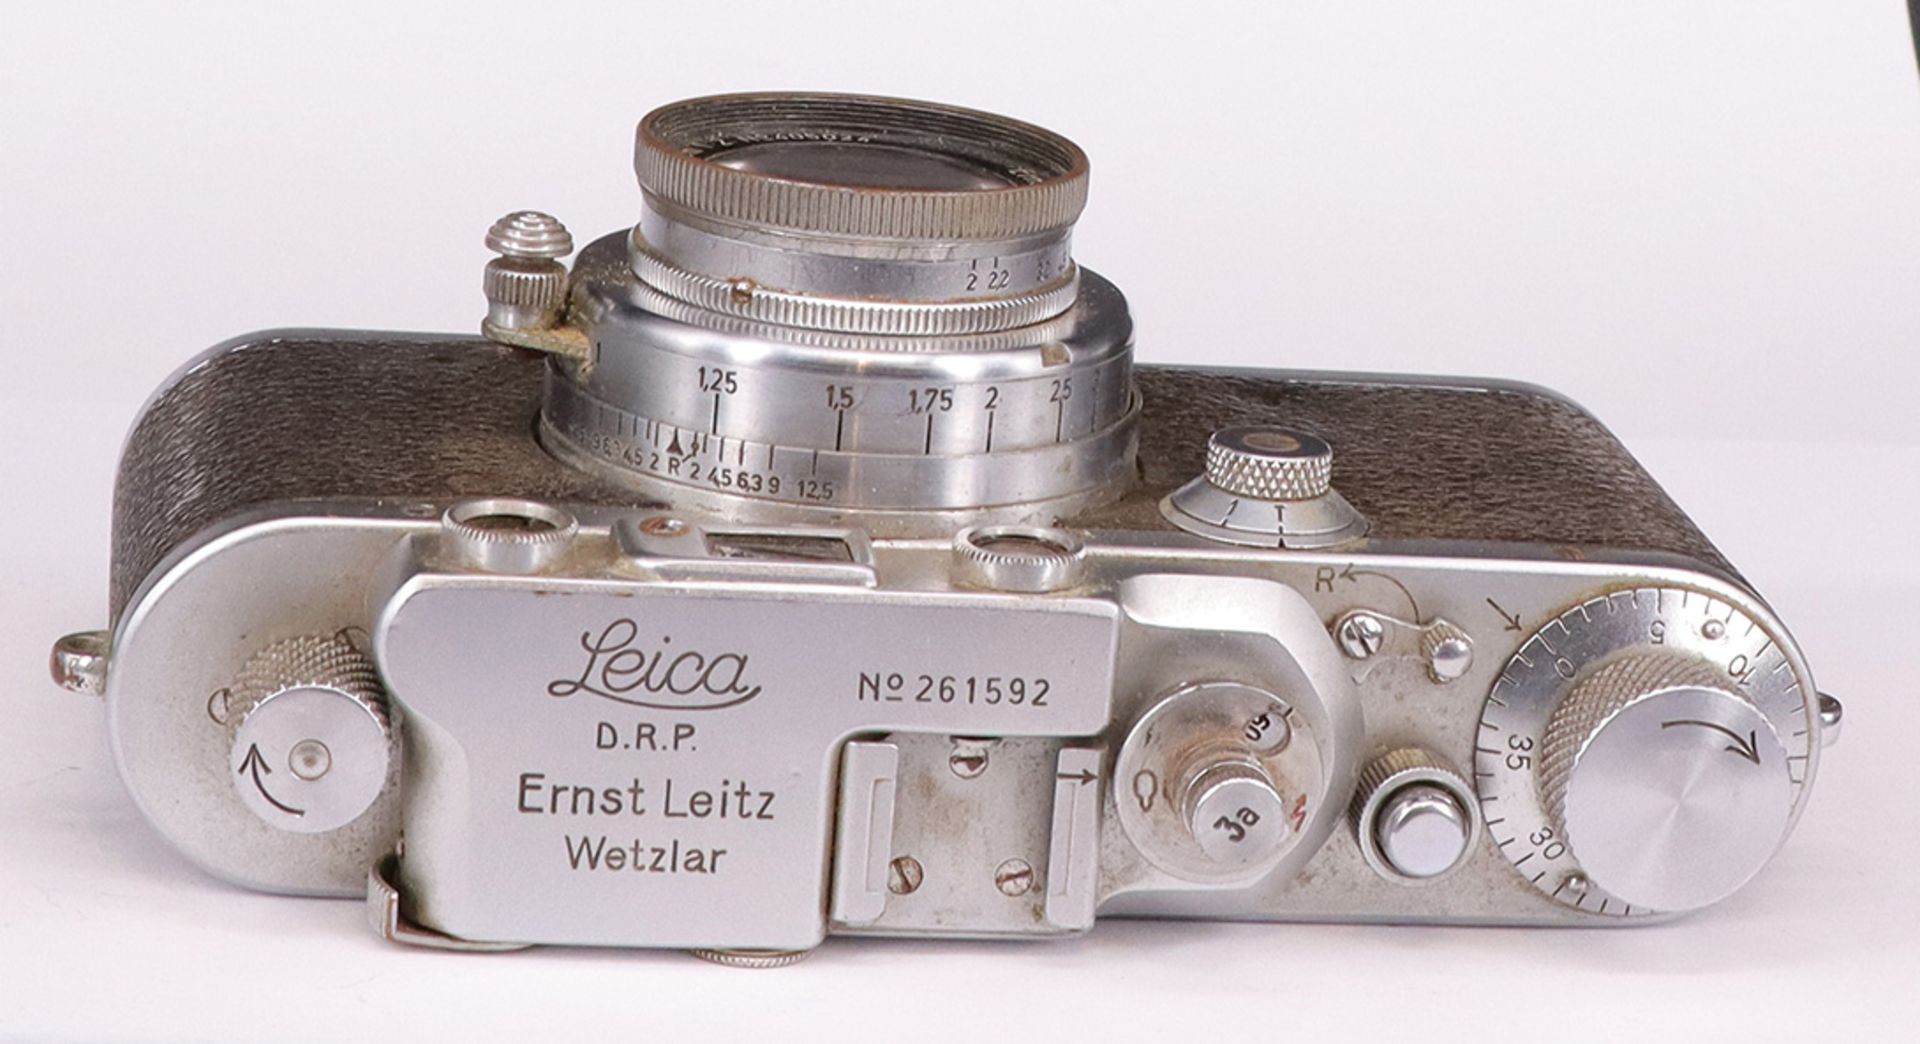 Leica, D.R.P. Ernst Leitz, Wetzlar, Kamera Nr. 261592, Objektiv f=5 cm 1:2, No 405024, Zustand: - Image 4 of 6